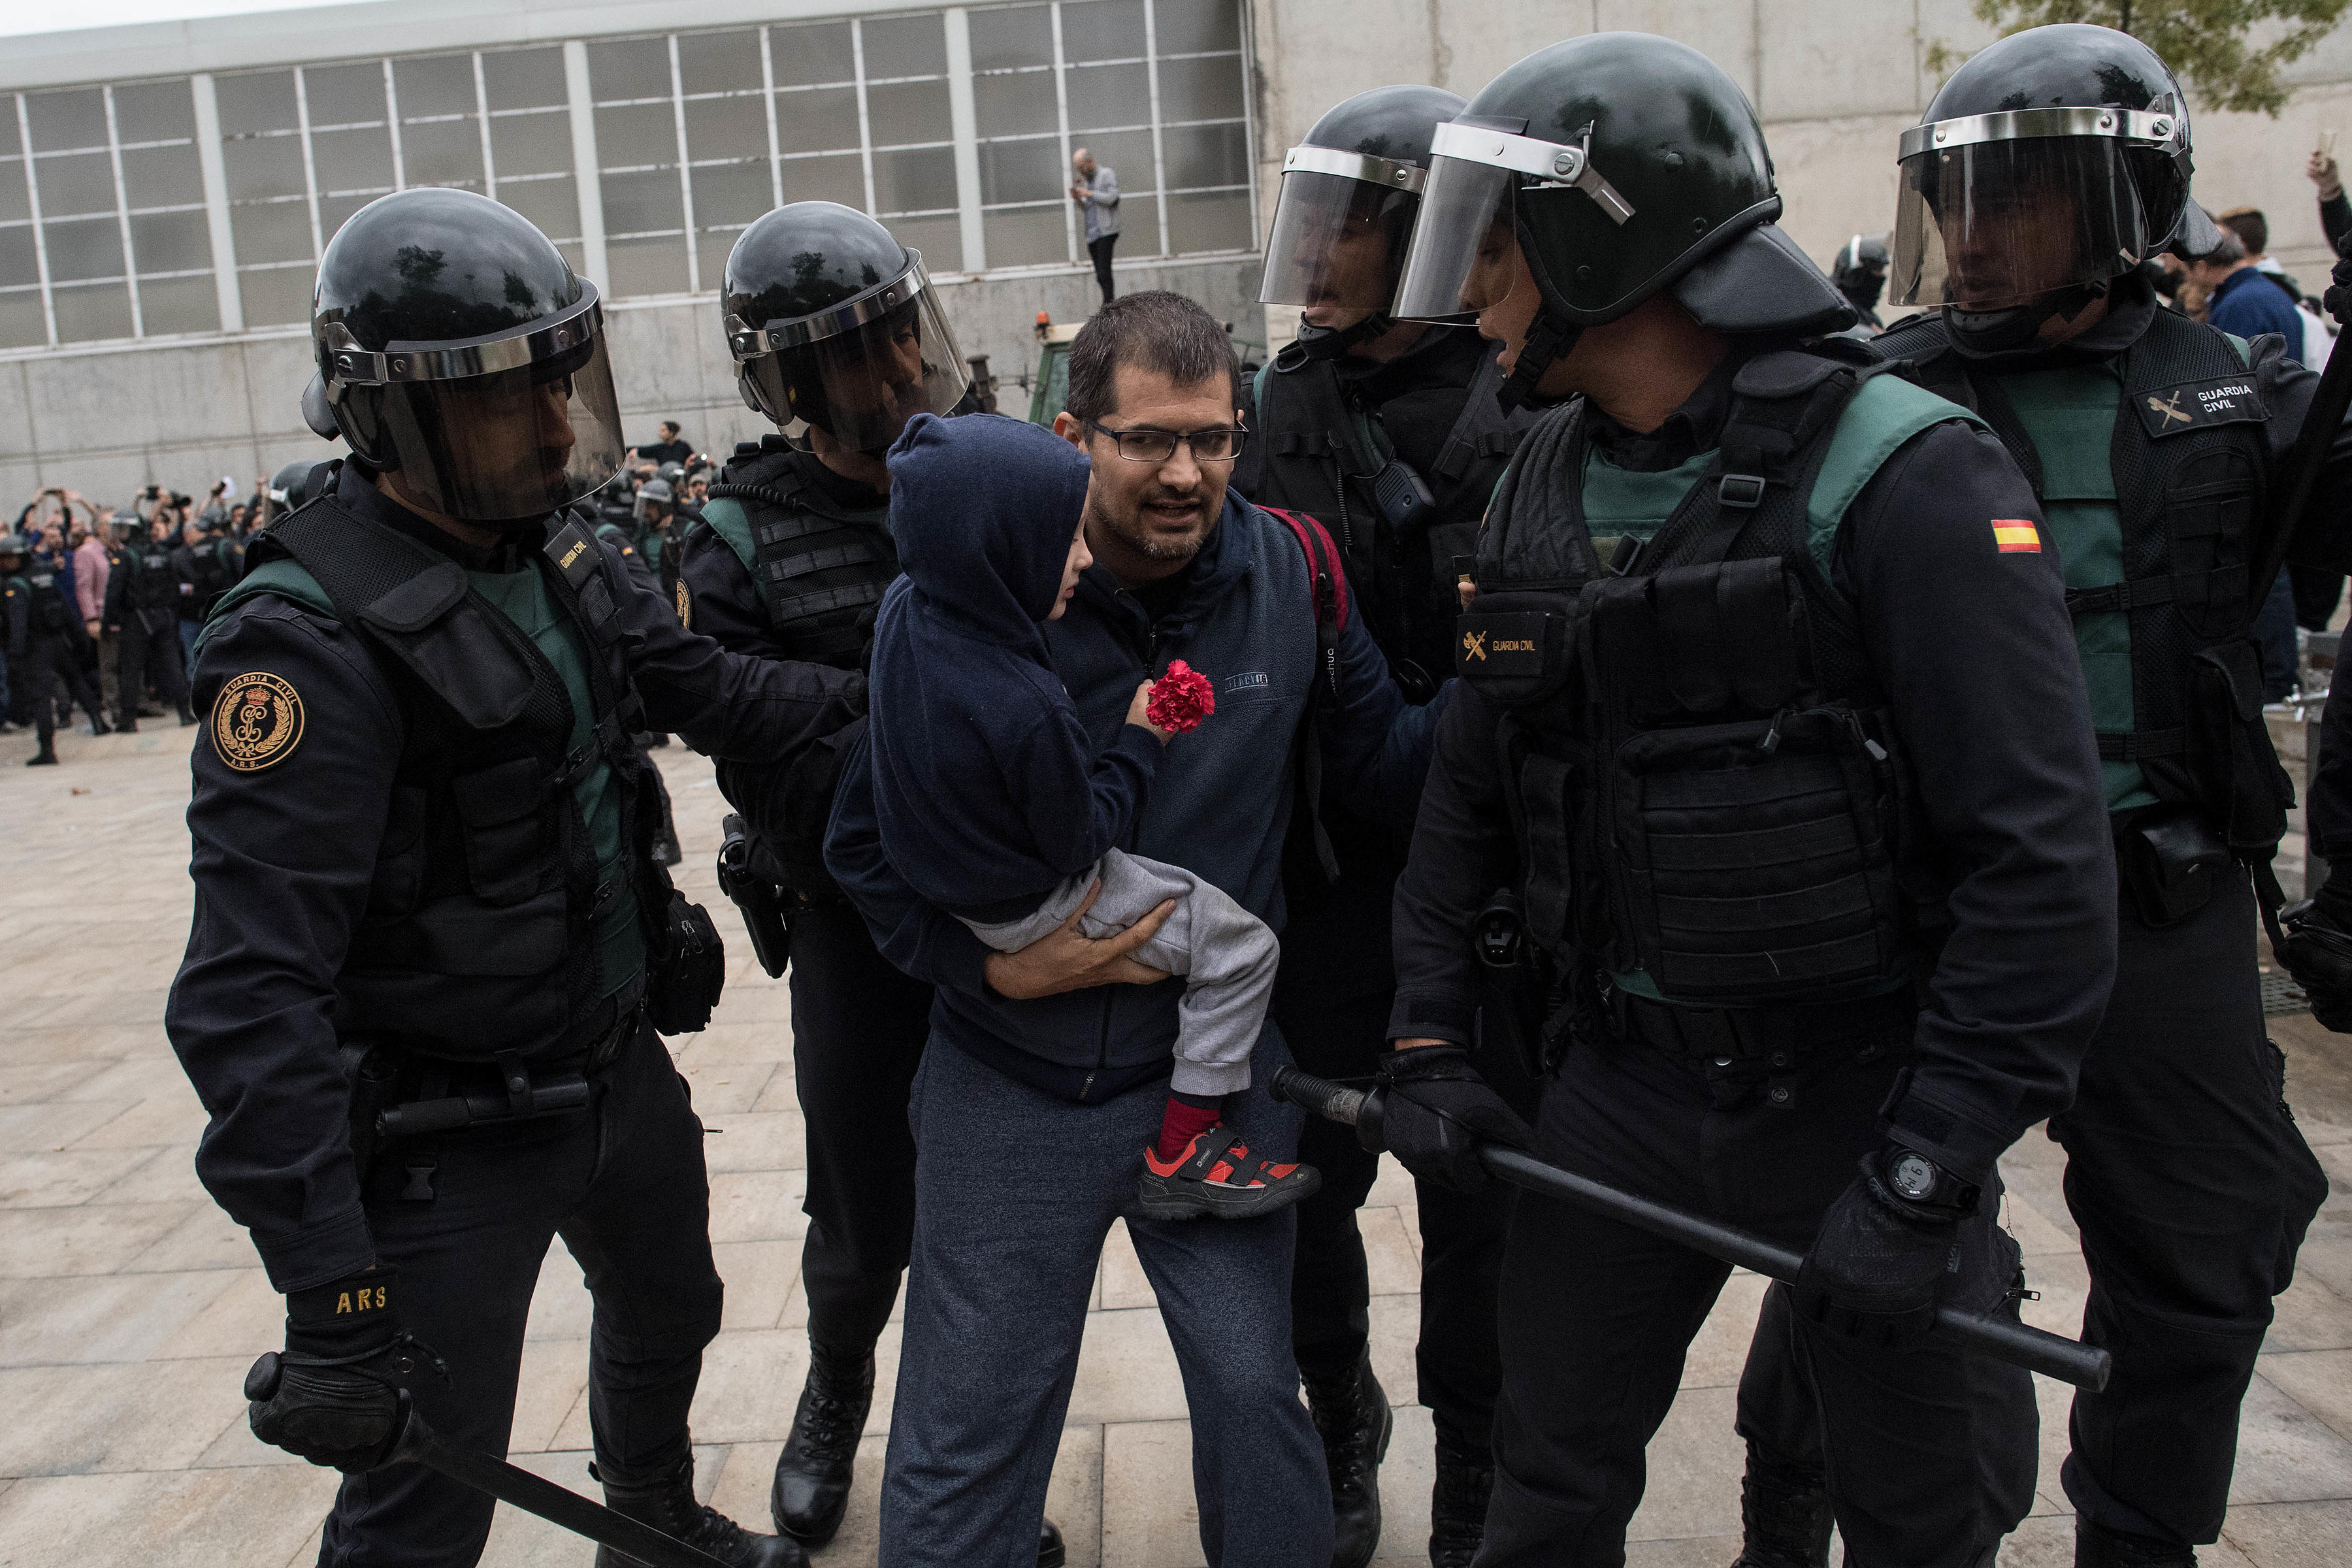 Пожарники из Каталонии защищали людей от ОМОНа собственной грудью! 